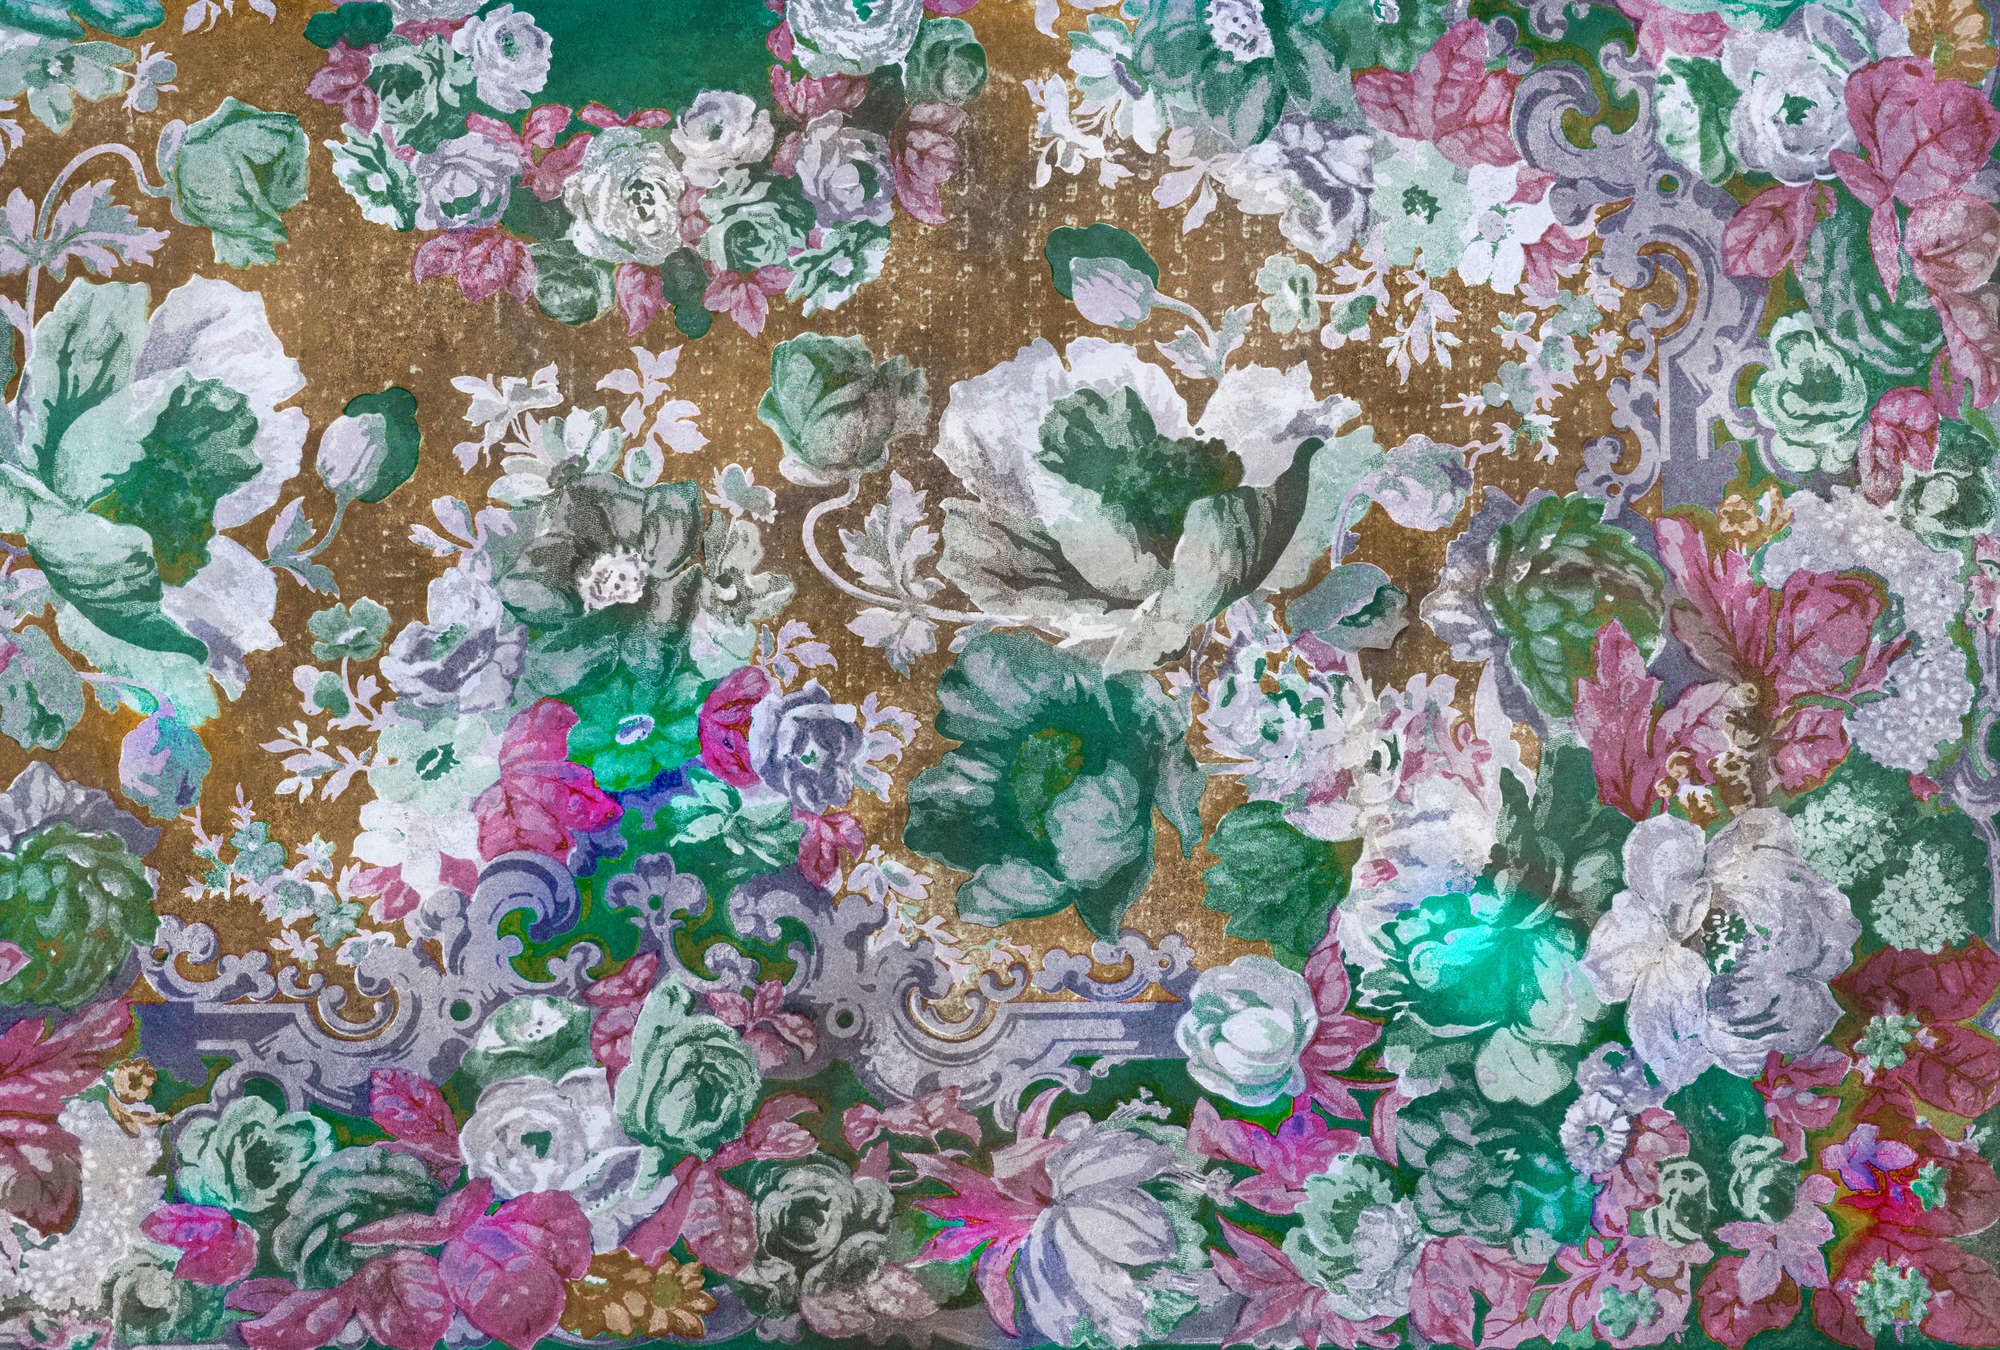             Fotomural »carmente 1« - Motivo floral de estilo clásico delante de estructura de yeso vintage - Coloreado | Material sin tejer mate, liso
        